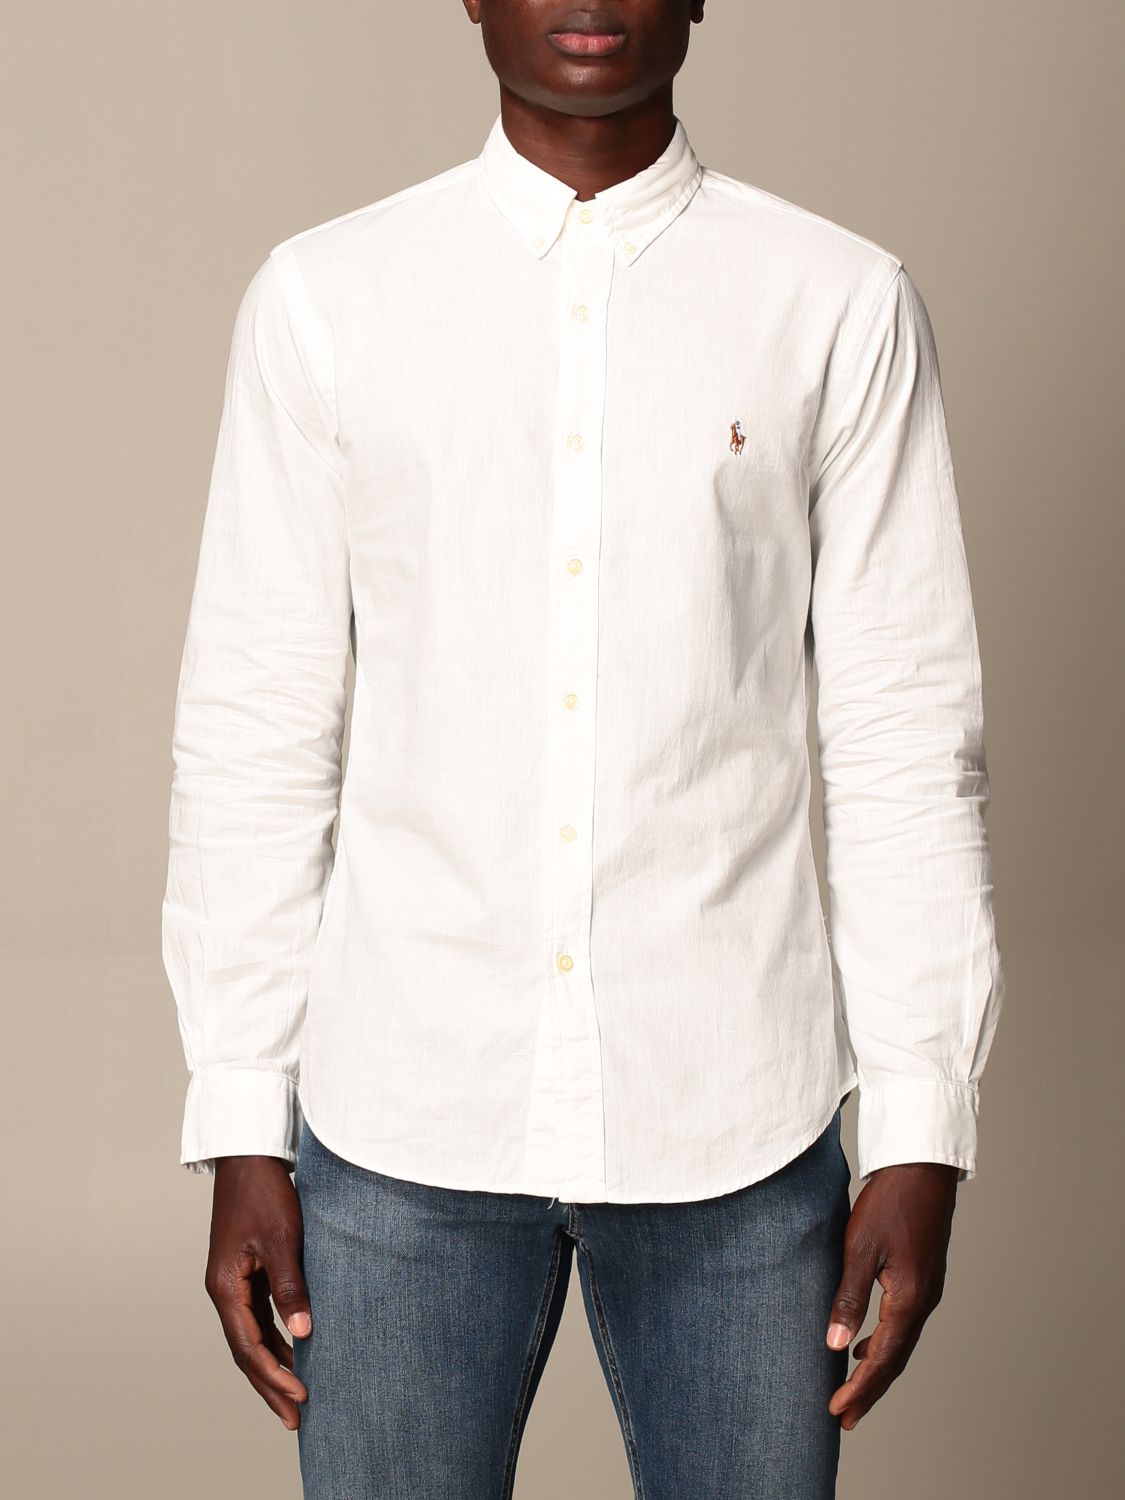 POLO RALPH LAUREN: cotton shirt with logo | Shirt Polo Ralph Lauren Men